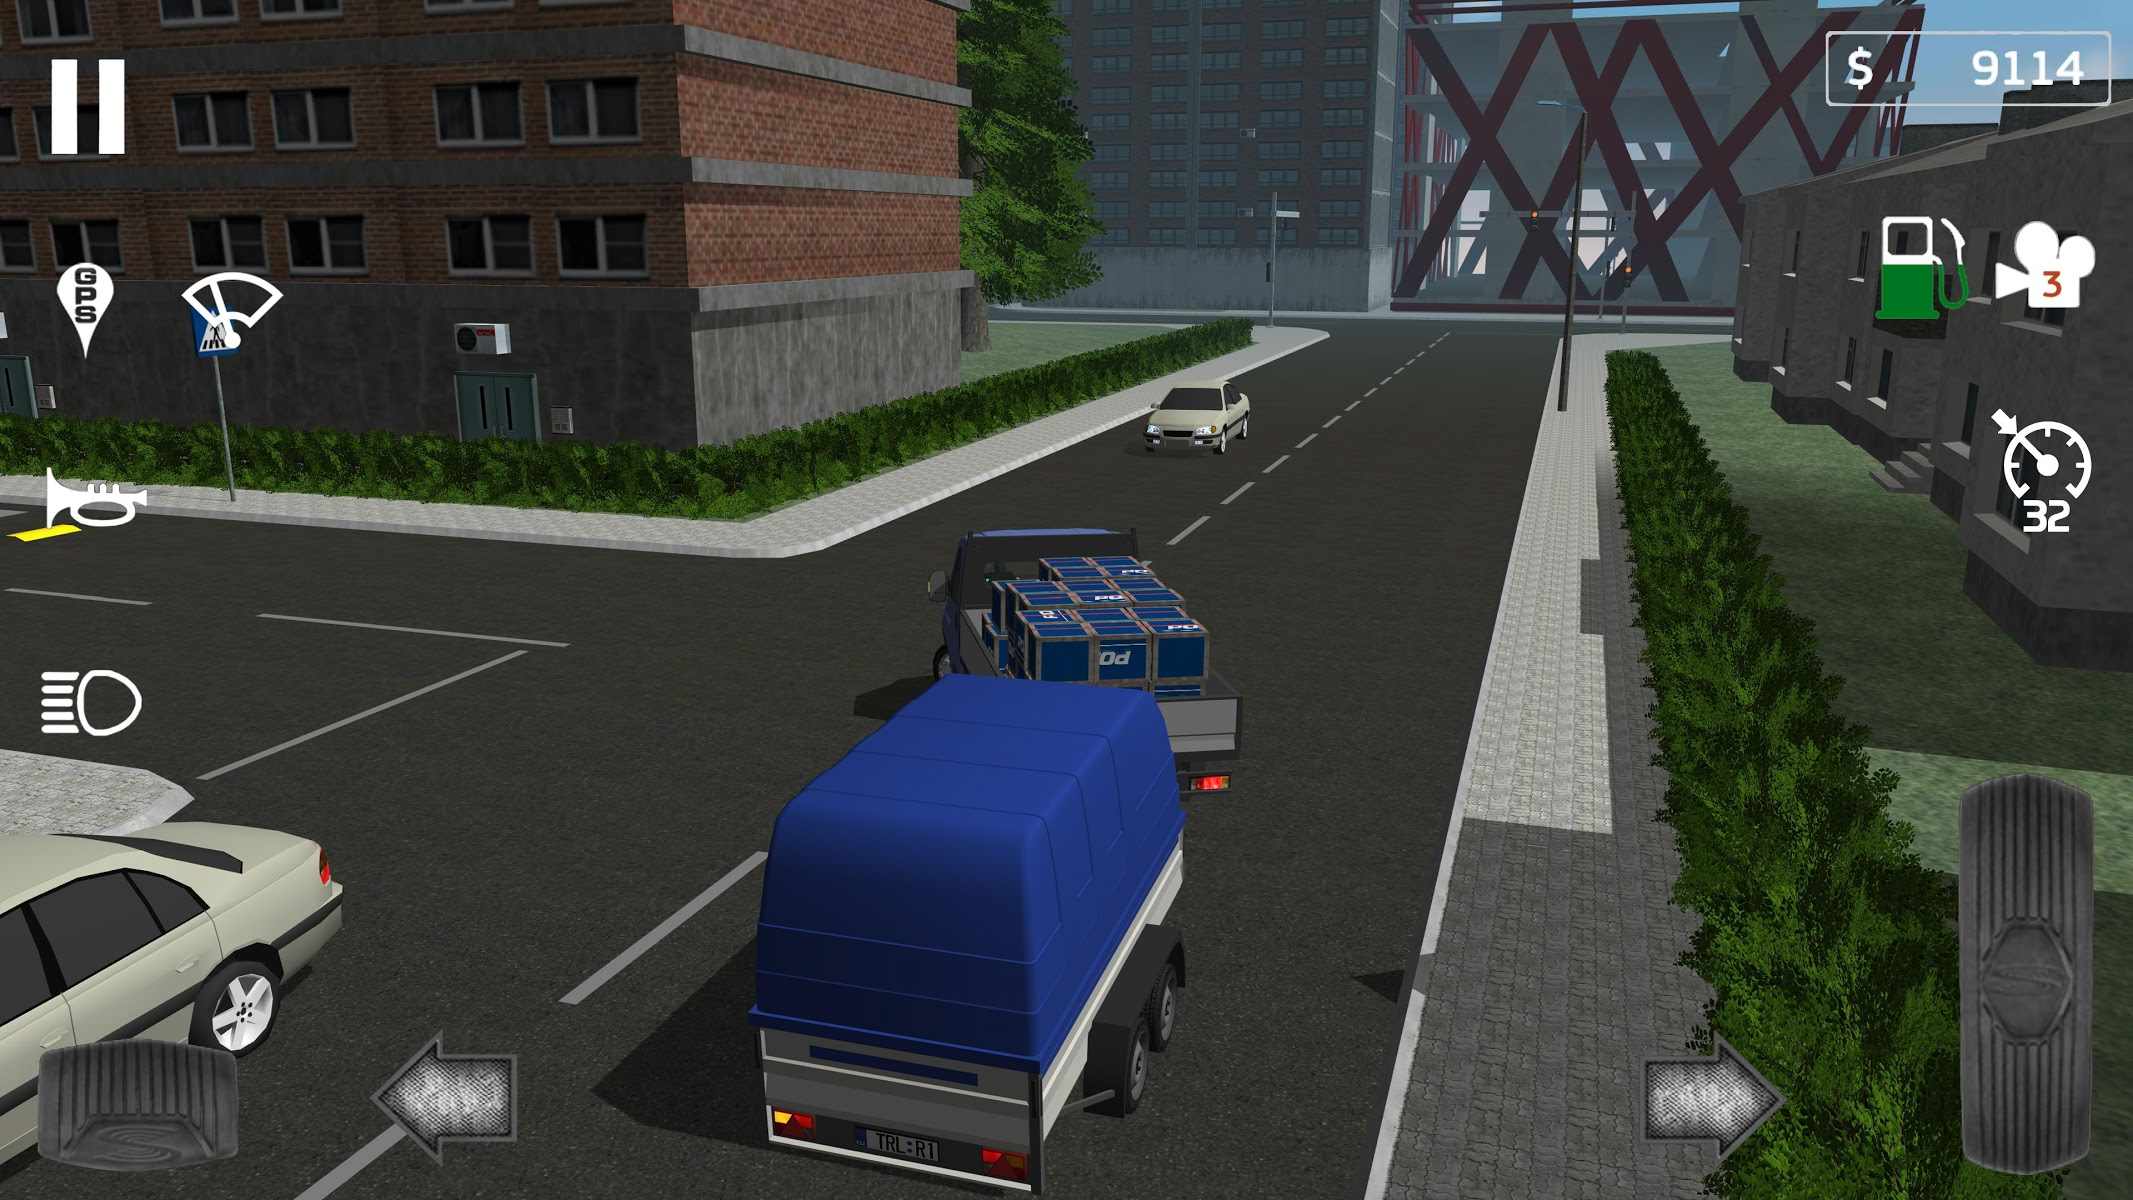 دانلود Cargo Transport Simulator 1.15.2 – بازی شبیه سازی کامیون باربری اندروید